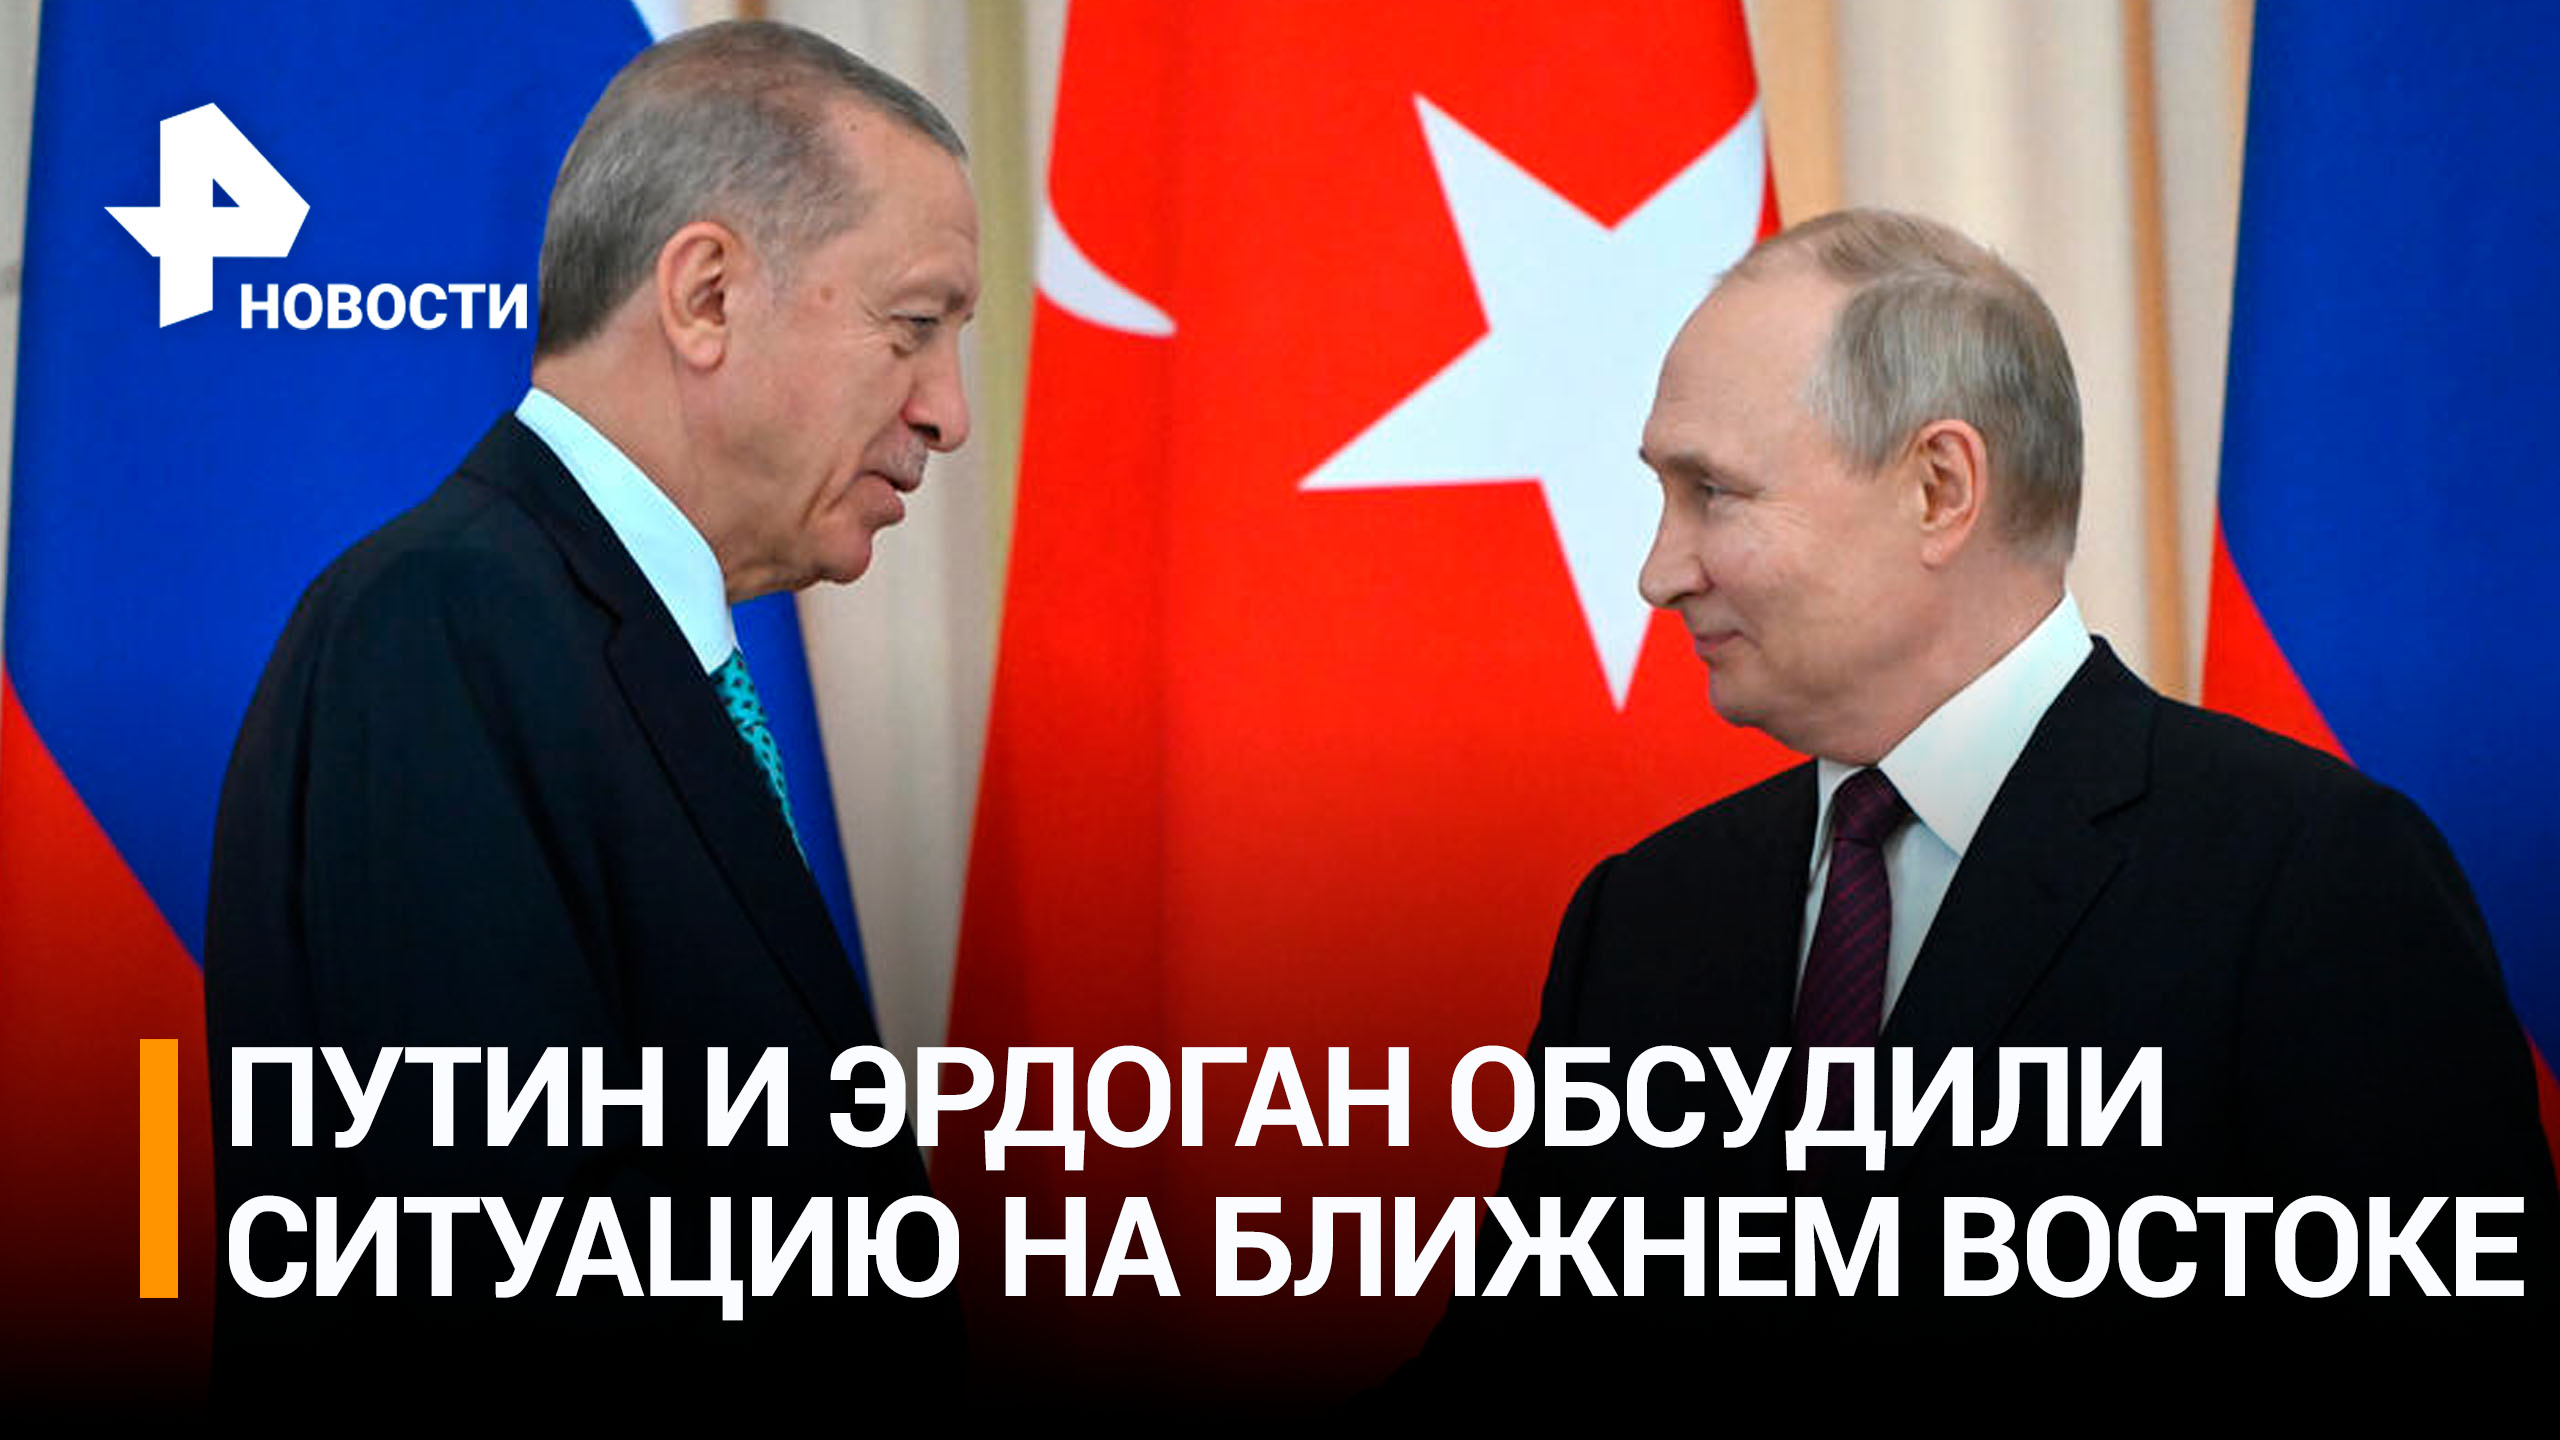 Путин и Эрдоган обсудили по телефону конфликт на Ближнем Востоке / РЕН Новости